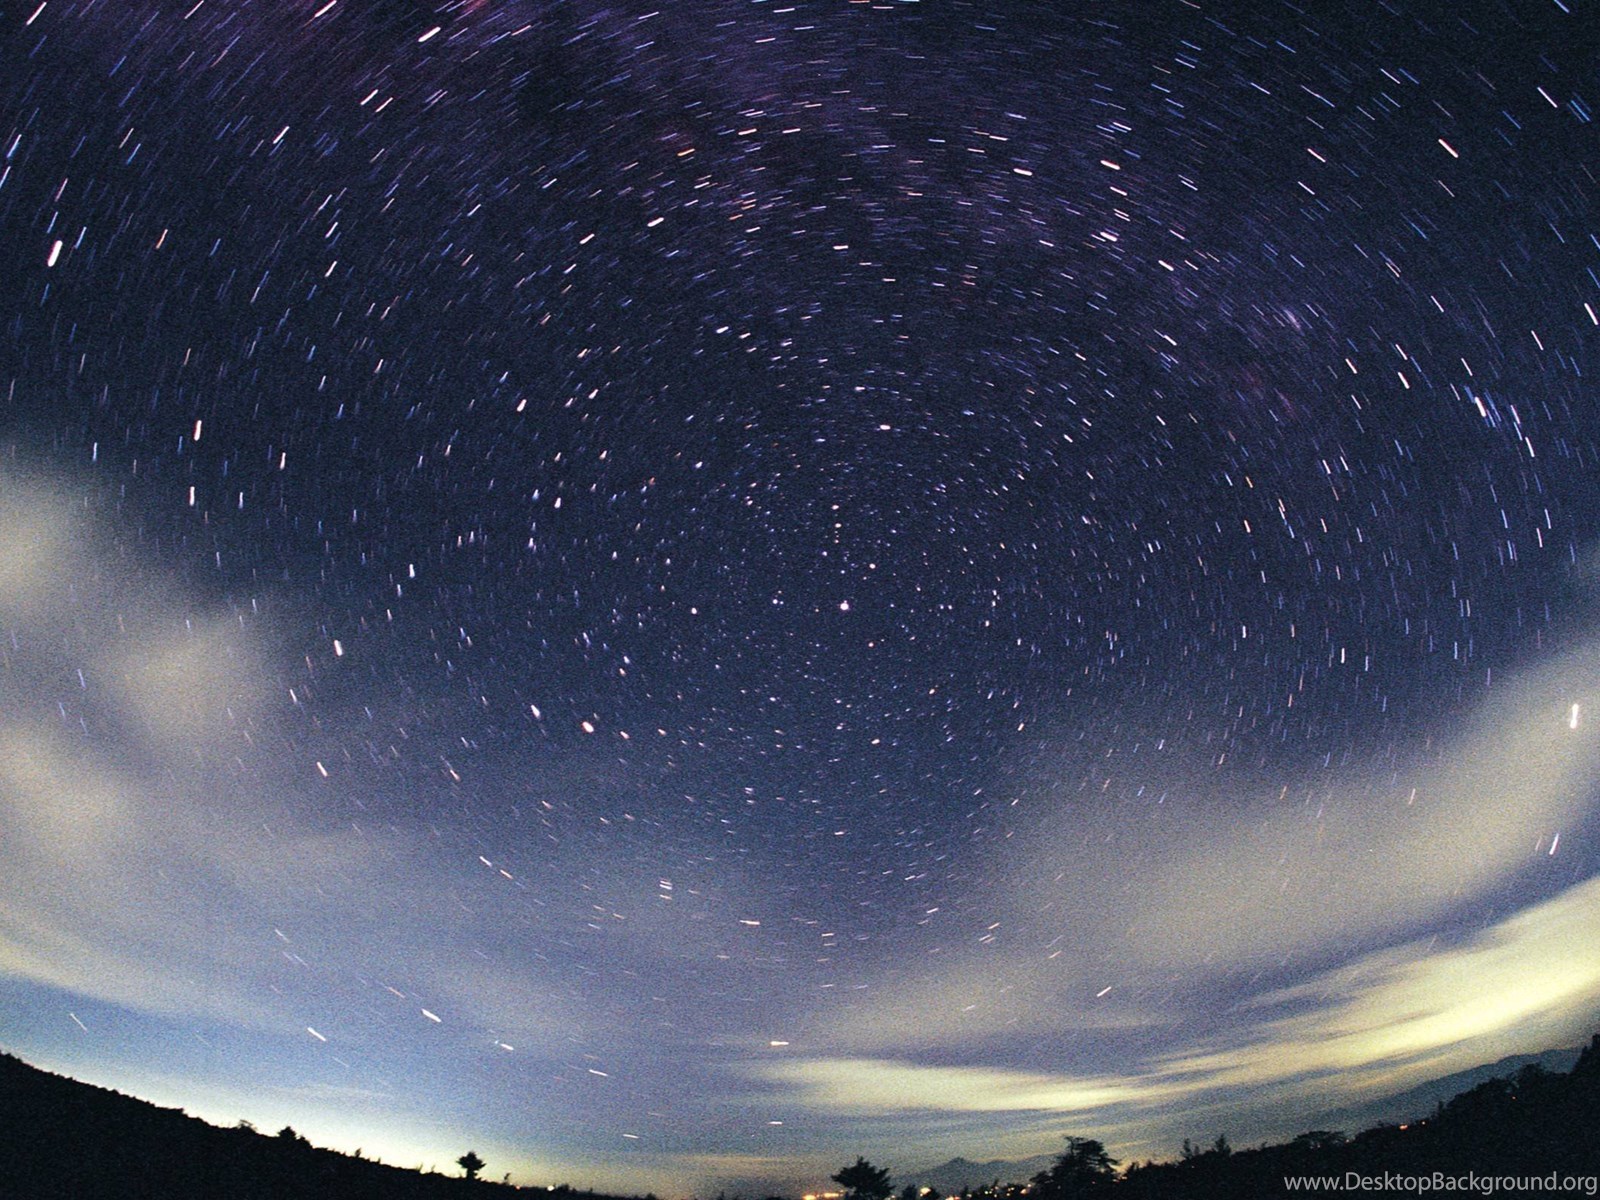 Cloud stars. Звездное небо. Ночное небо со звездами. Ночное звездное небо. Красивое ночное небо.